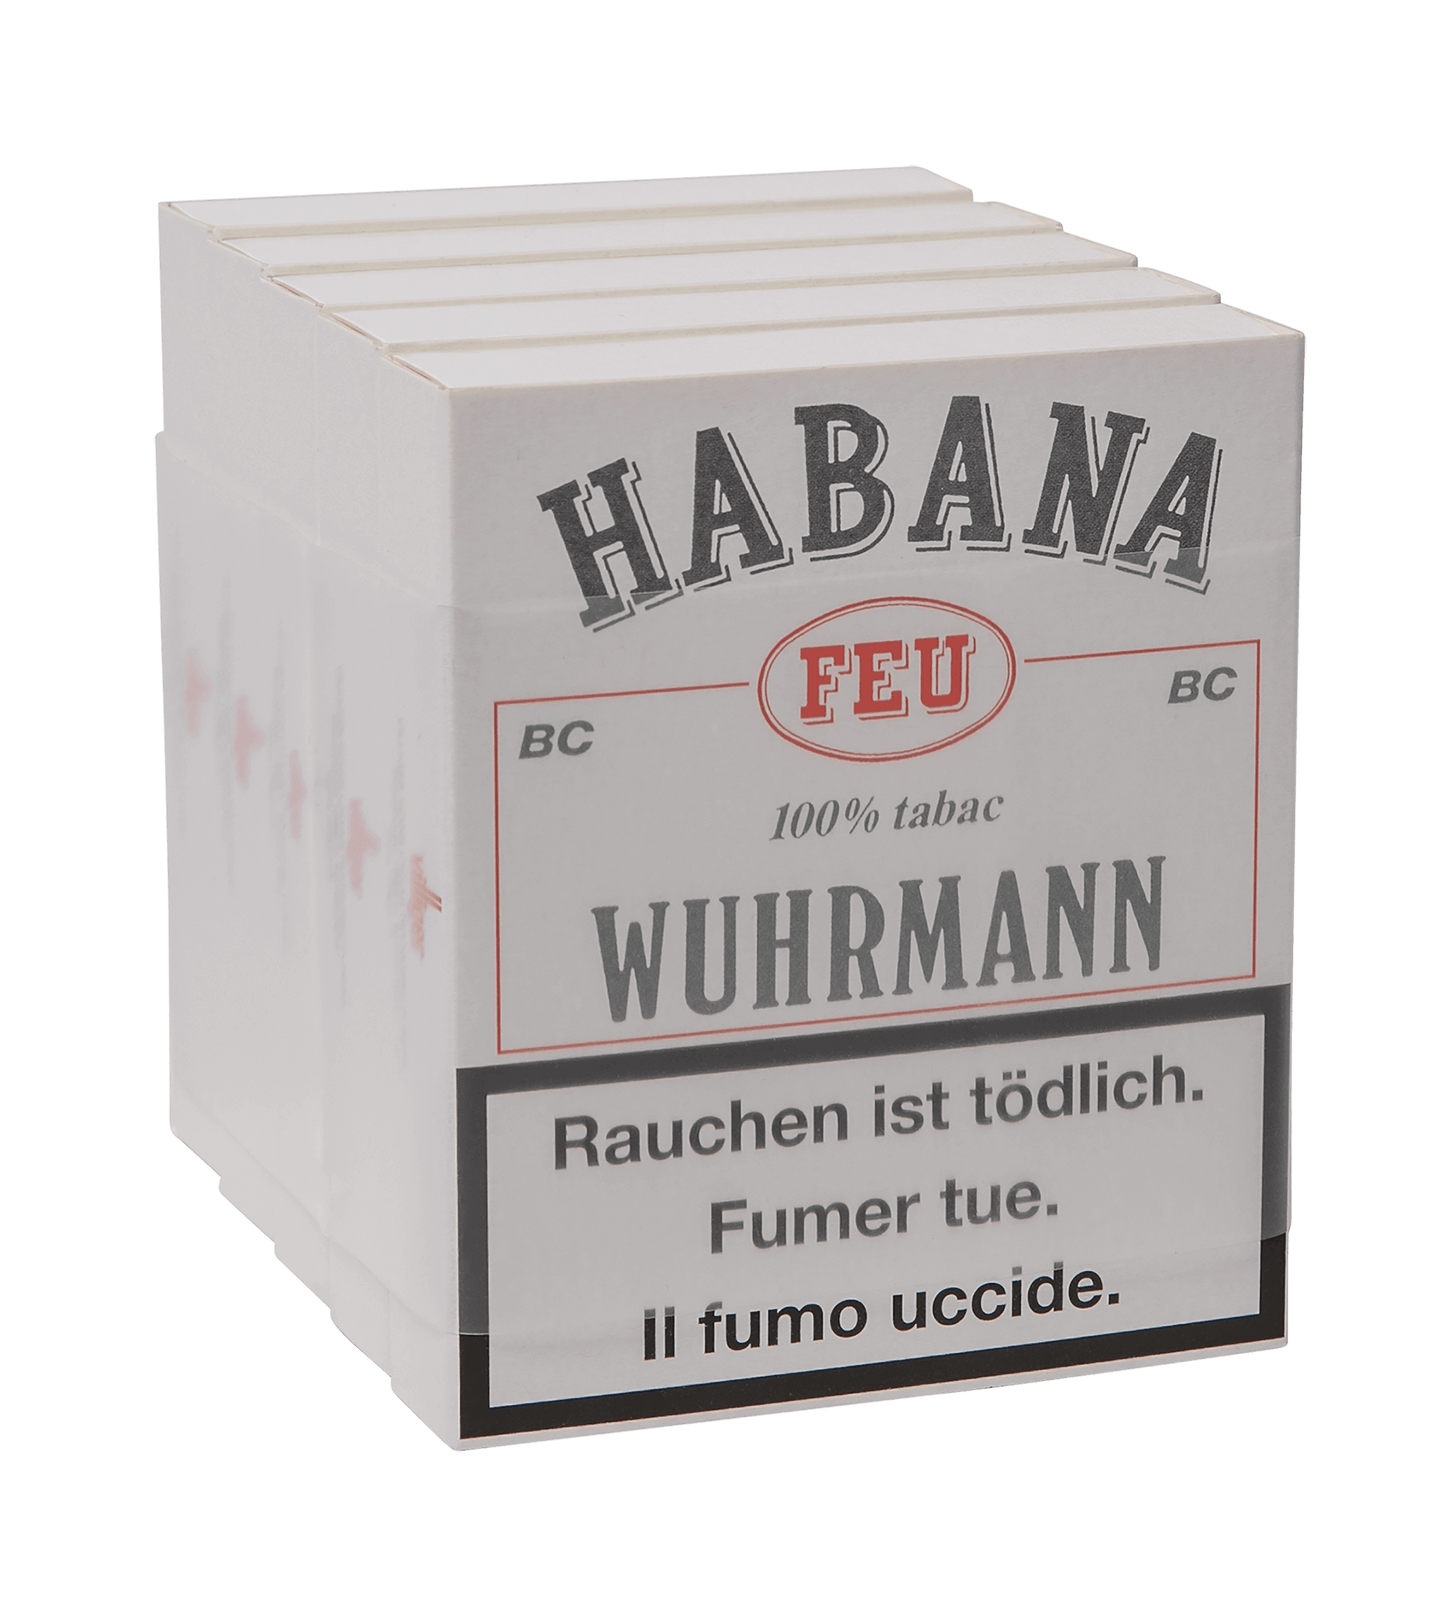 Habana-Feu BC 5 Stück